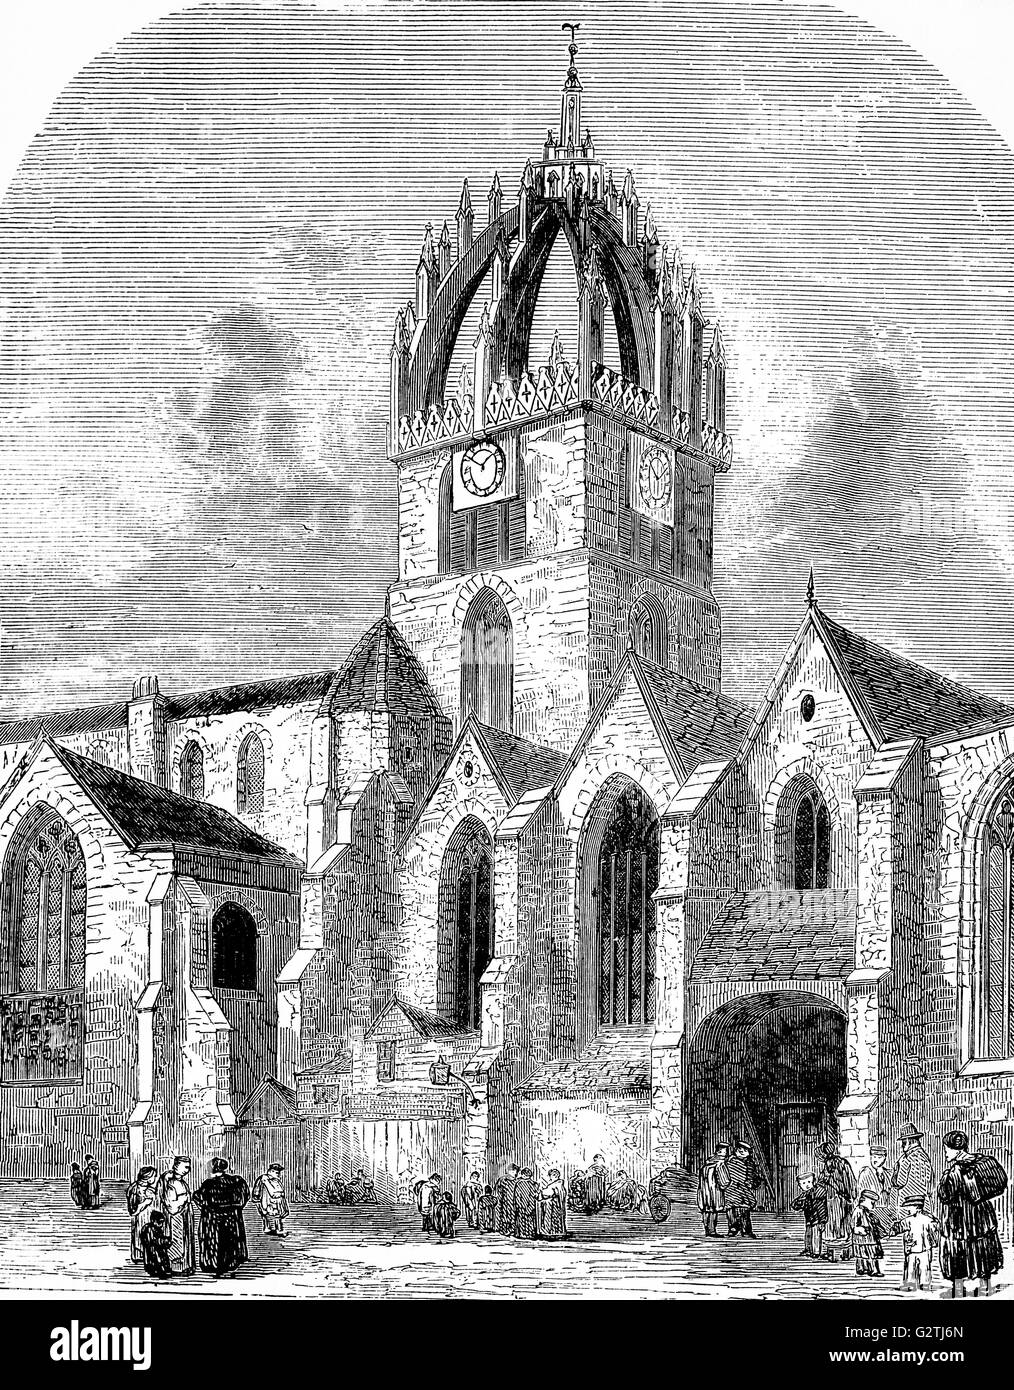 Dibujo del siglo XIX de la Catedral de St Giles', también conocido como el Gran Kirk de Edimburgo, es el principal lugar de culto de la Iglesia de Escocia en Edimburgo, ha sido uno de los puntos focales de religiosos de Edimburgo durante aproximadamente 900 años. Foto de stock